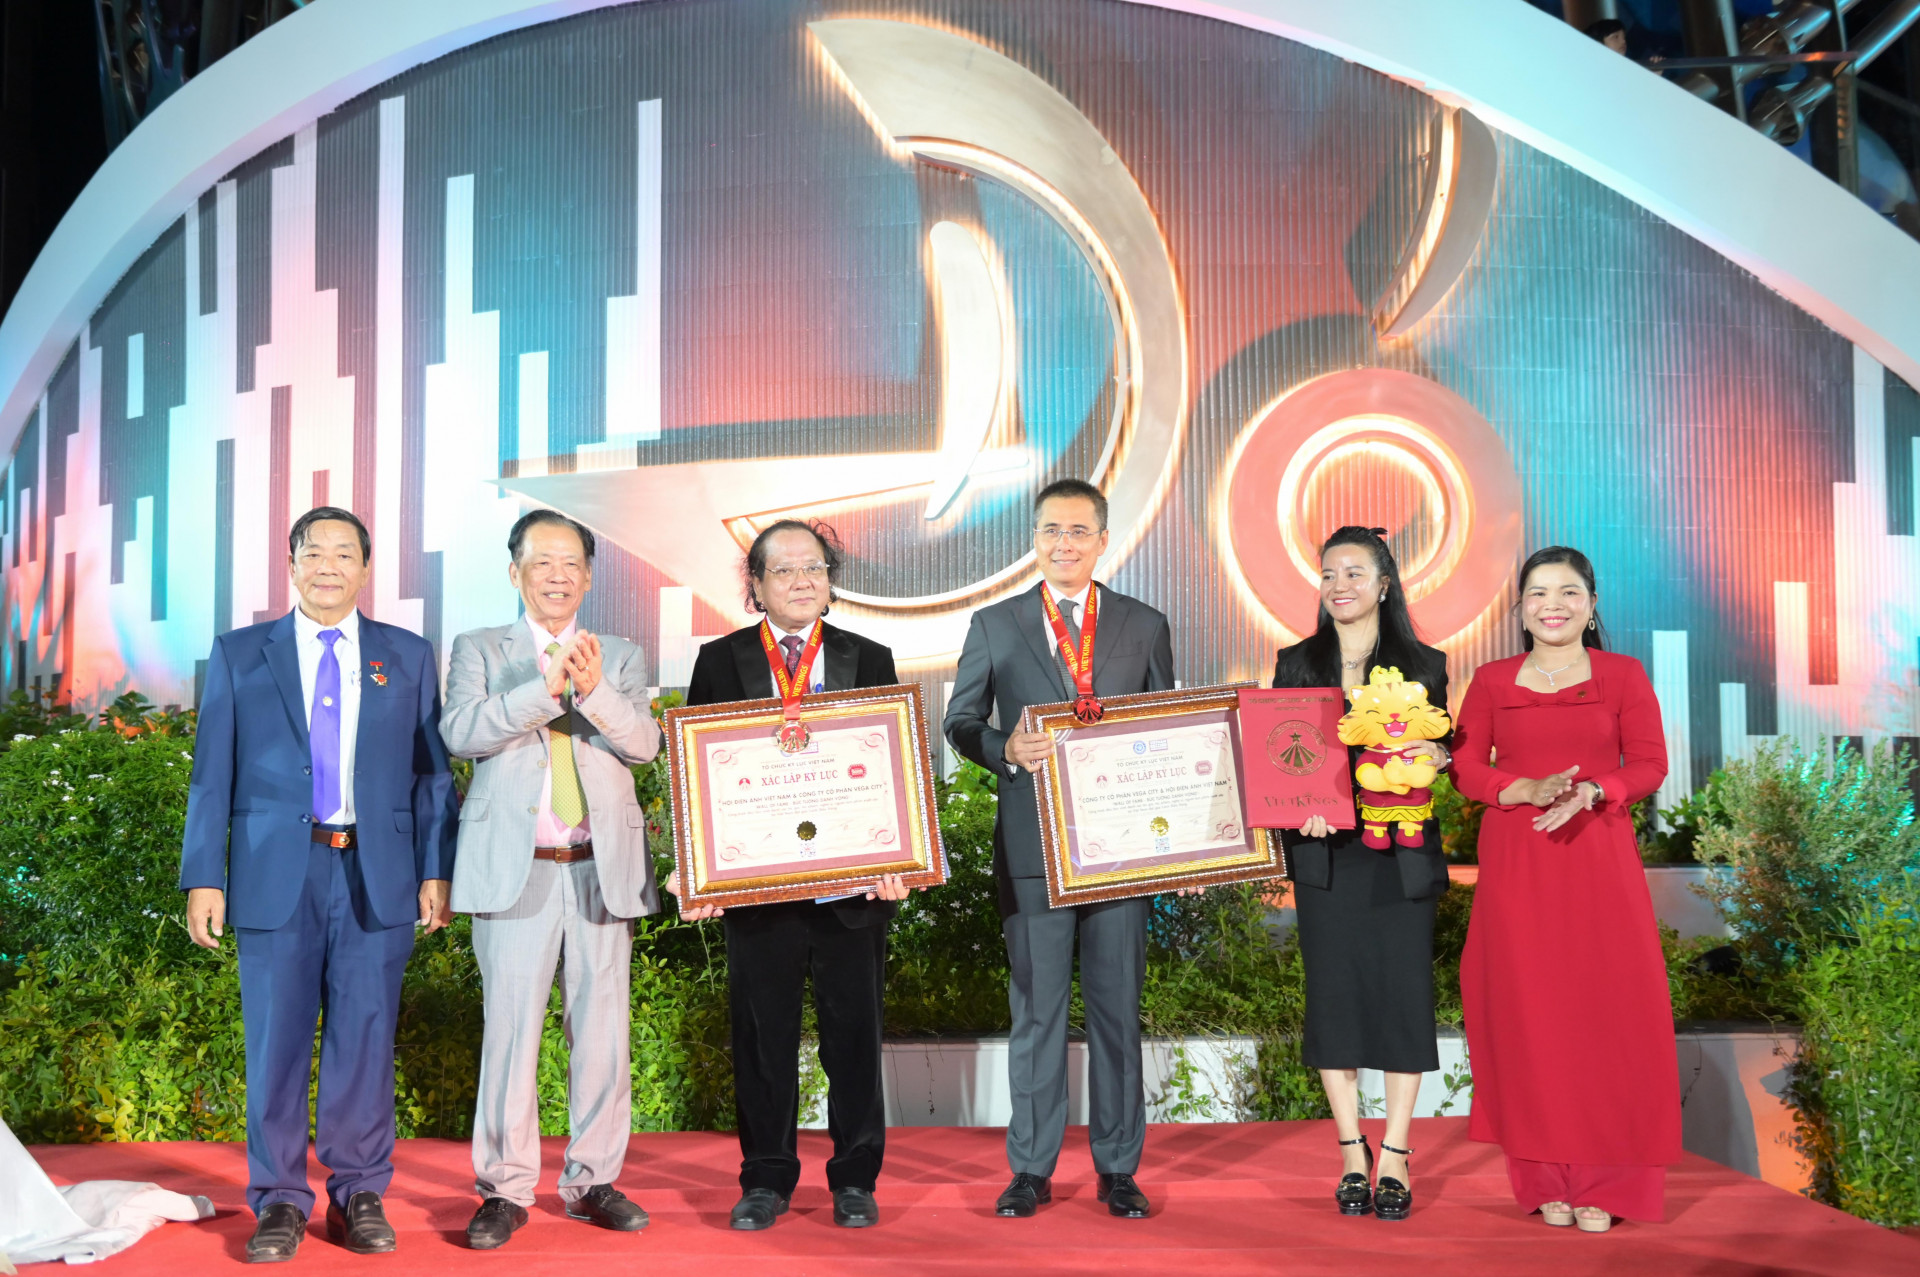 Tại sự kiện thảm đỏ, Tổ chức Kỷ lục Việt Nam trao chứng nhận xác lập kỷ lục công trình Bức tường danh vọng là công trình đầu tiên vinh danh các tác giả, tác phẩm, nghệ sĩ, người làm phim xuất sắc tại Việt Nam đạt giải Cánh diều vàng.